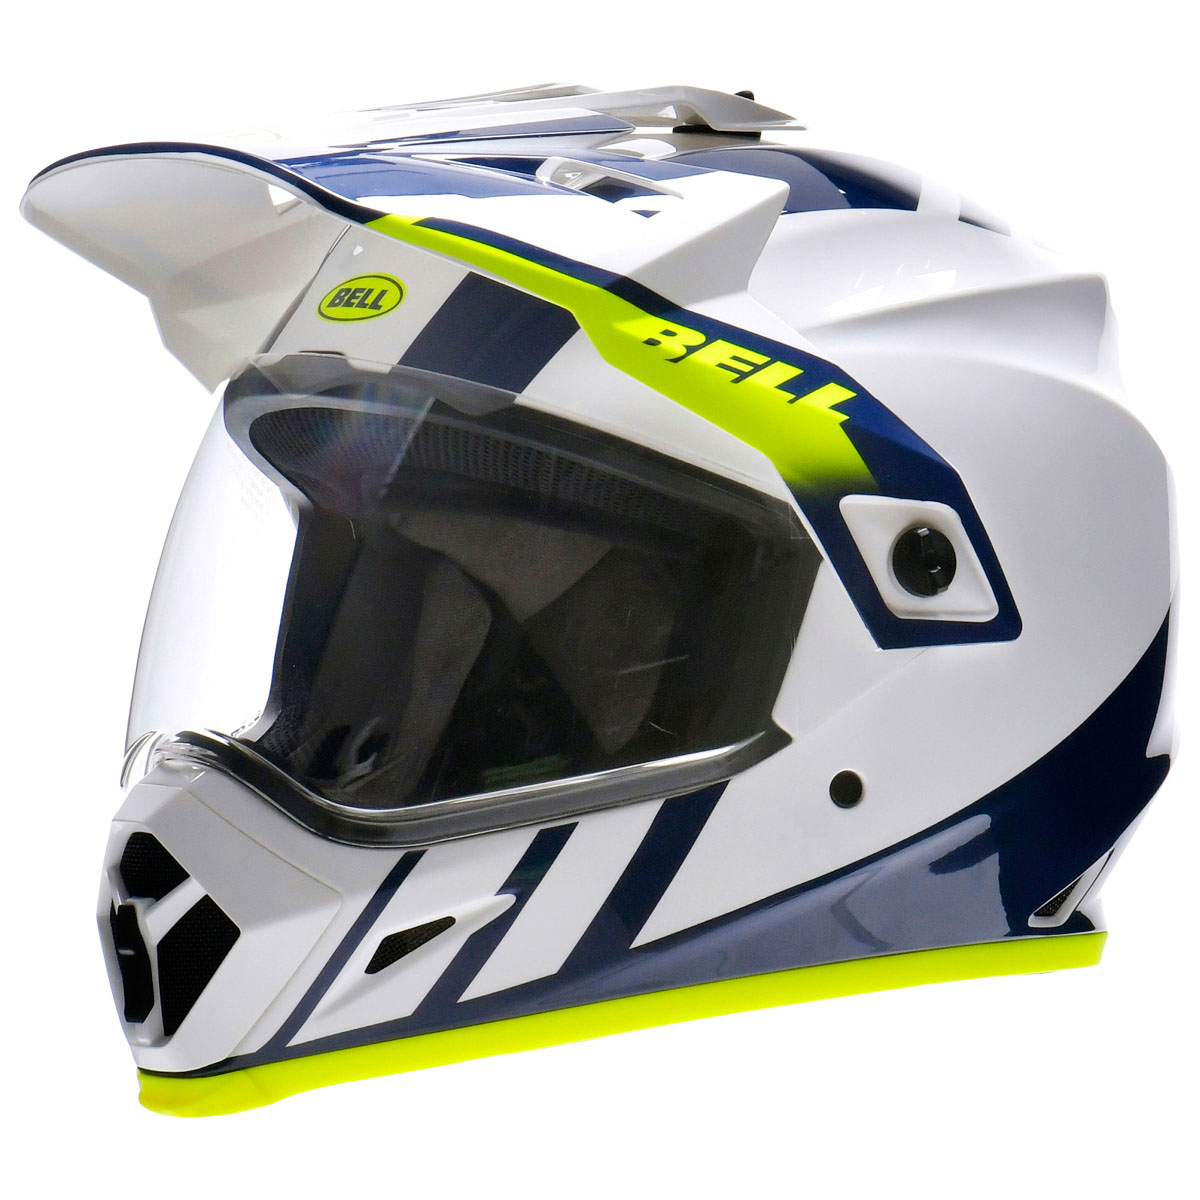 オフロードヘルメットの種類と選び方 Dirtbikeplus ダートバイクプラス